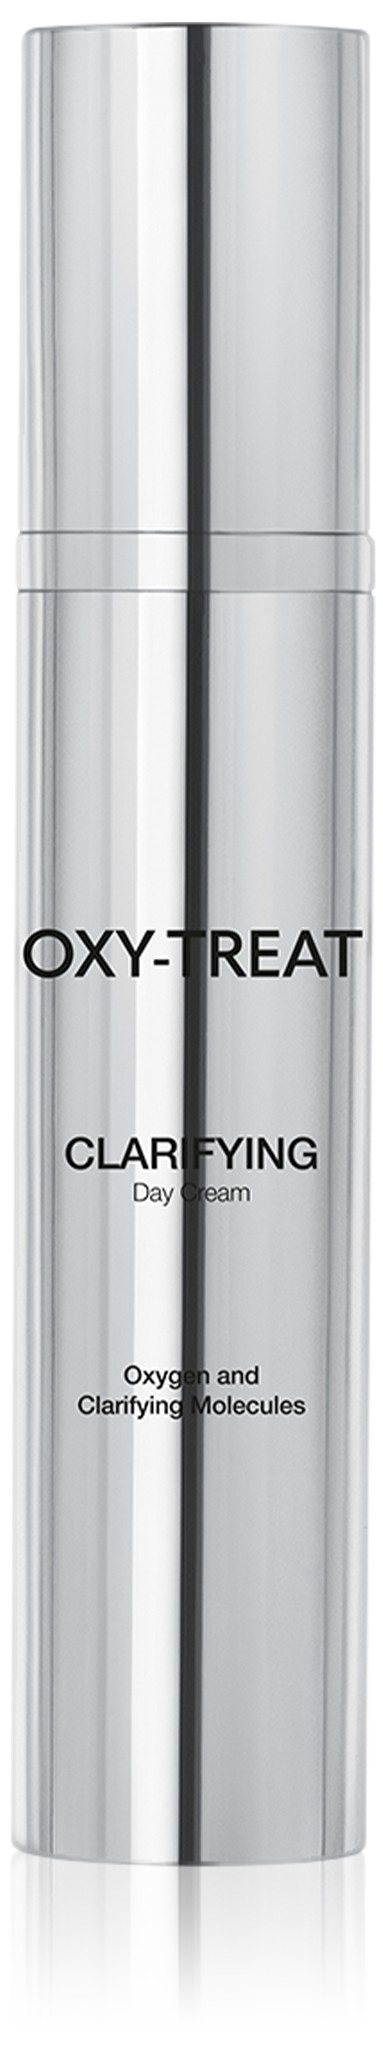 OXY-TREAT Clarifying denný krém pre rozjasnenie pleti 50 ml